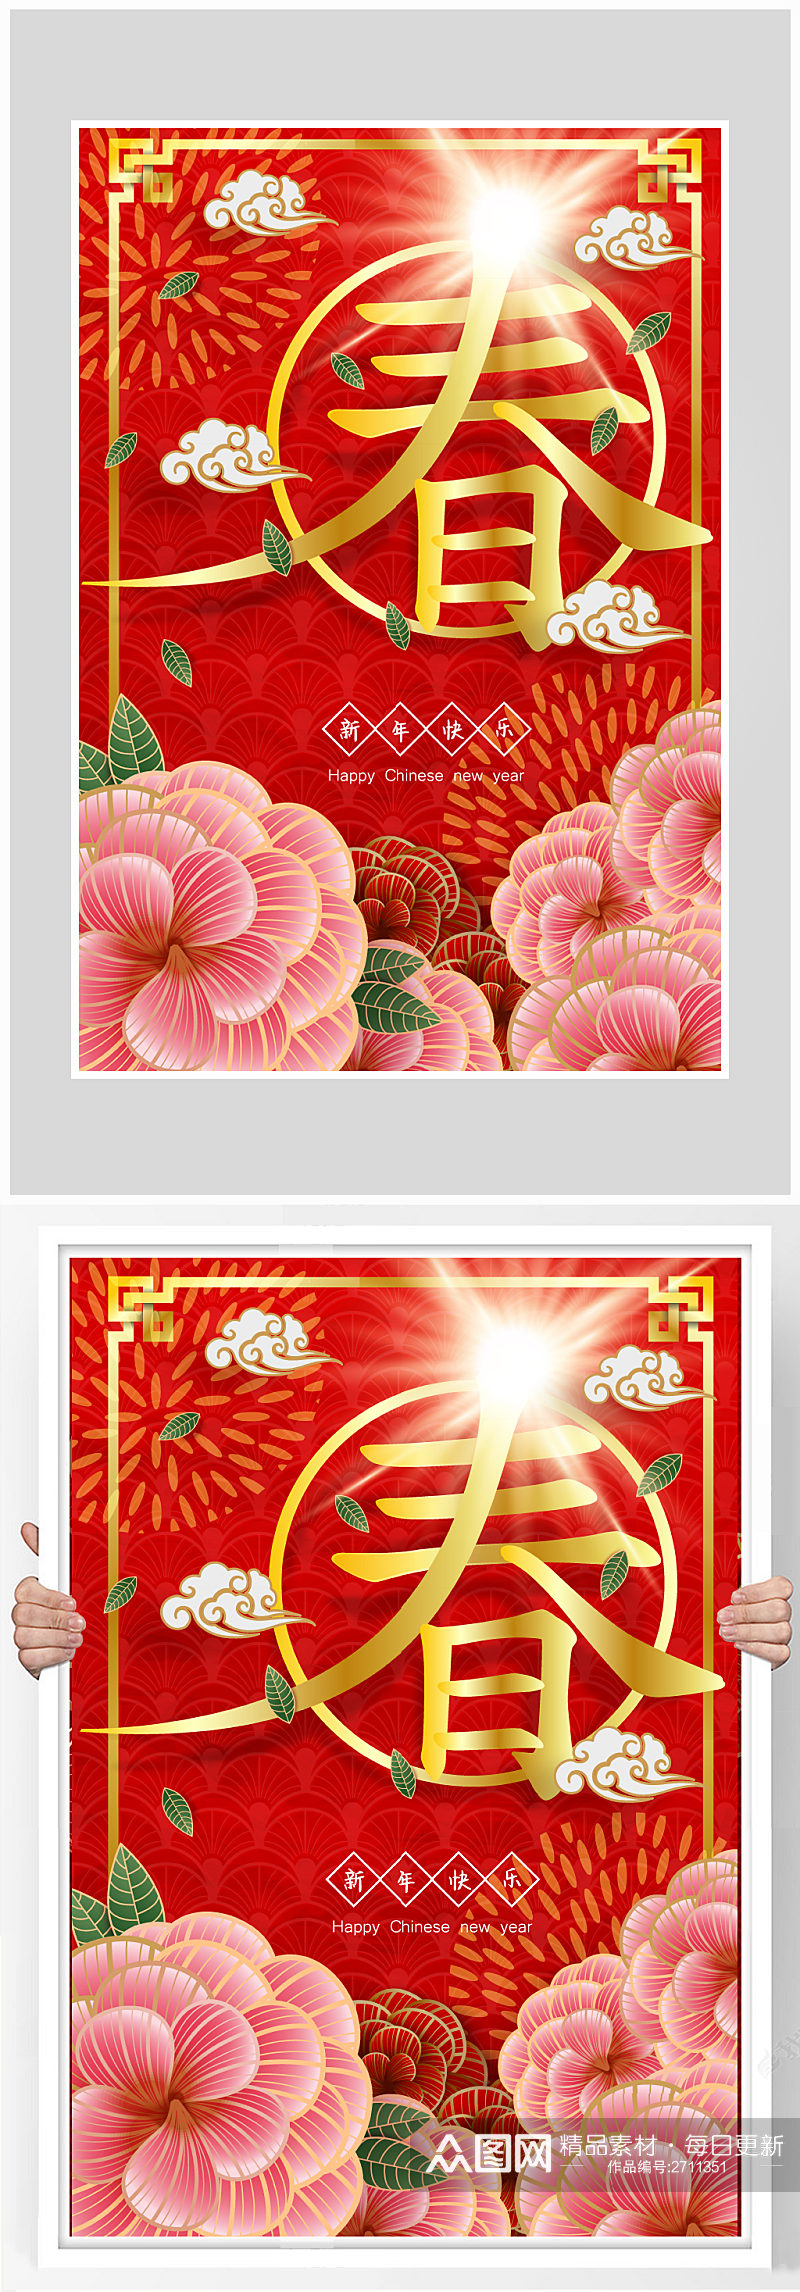 红色质感春节新年快乐海报设计素材